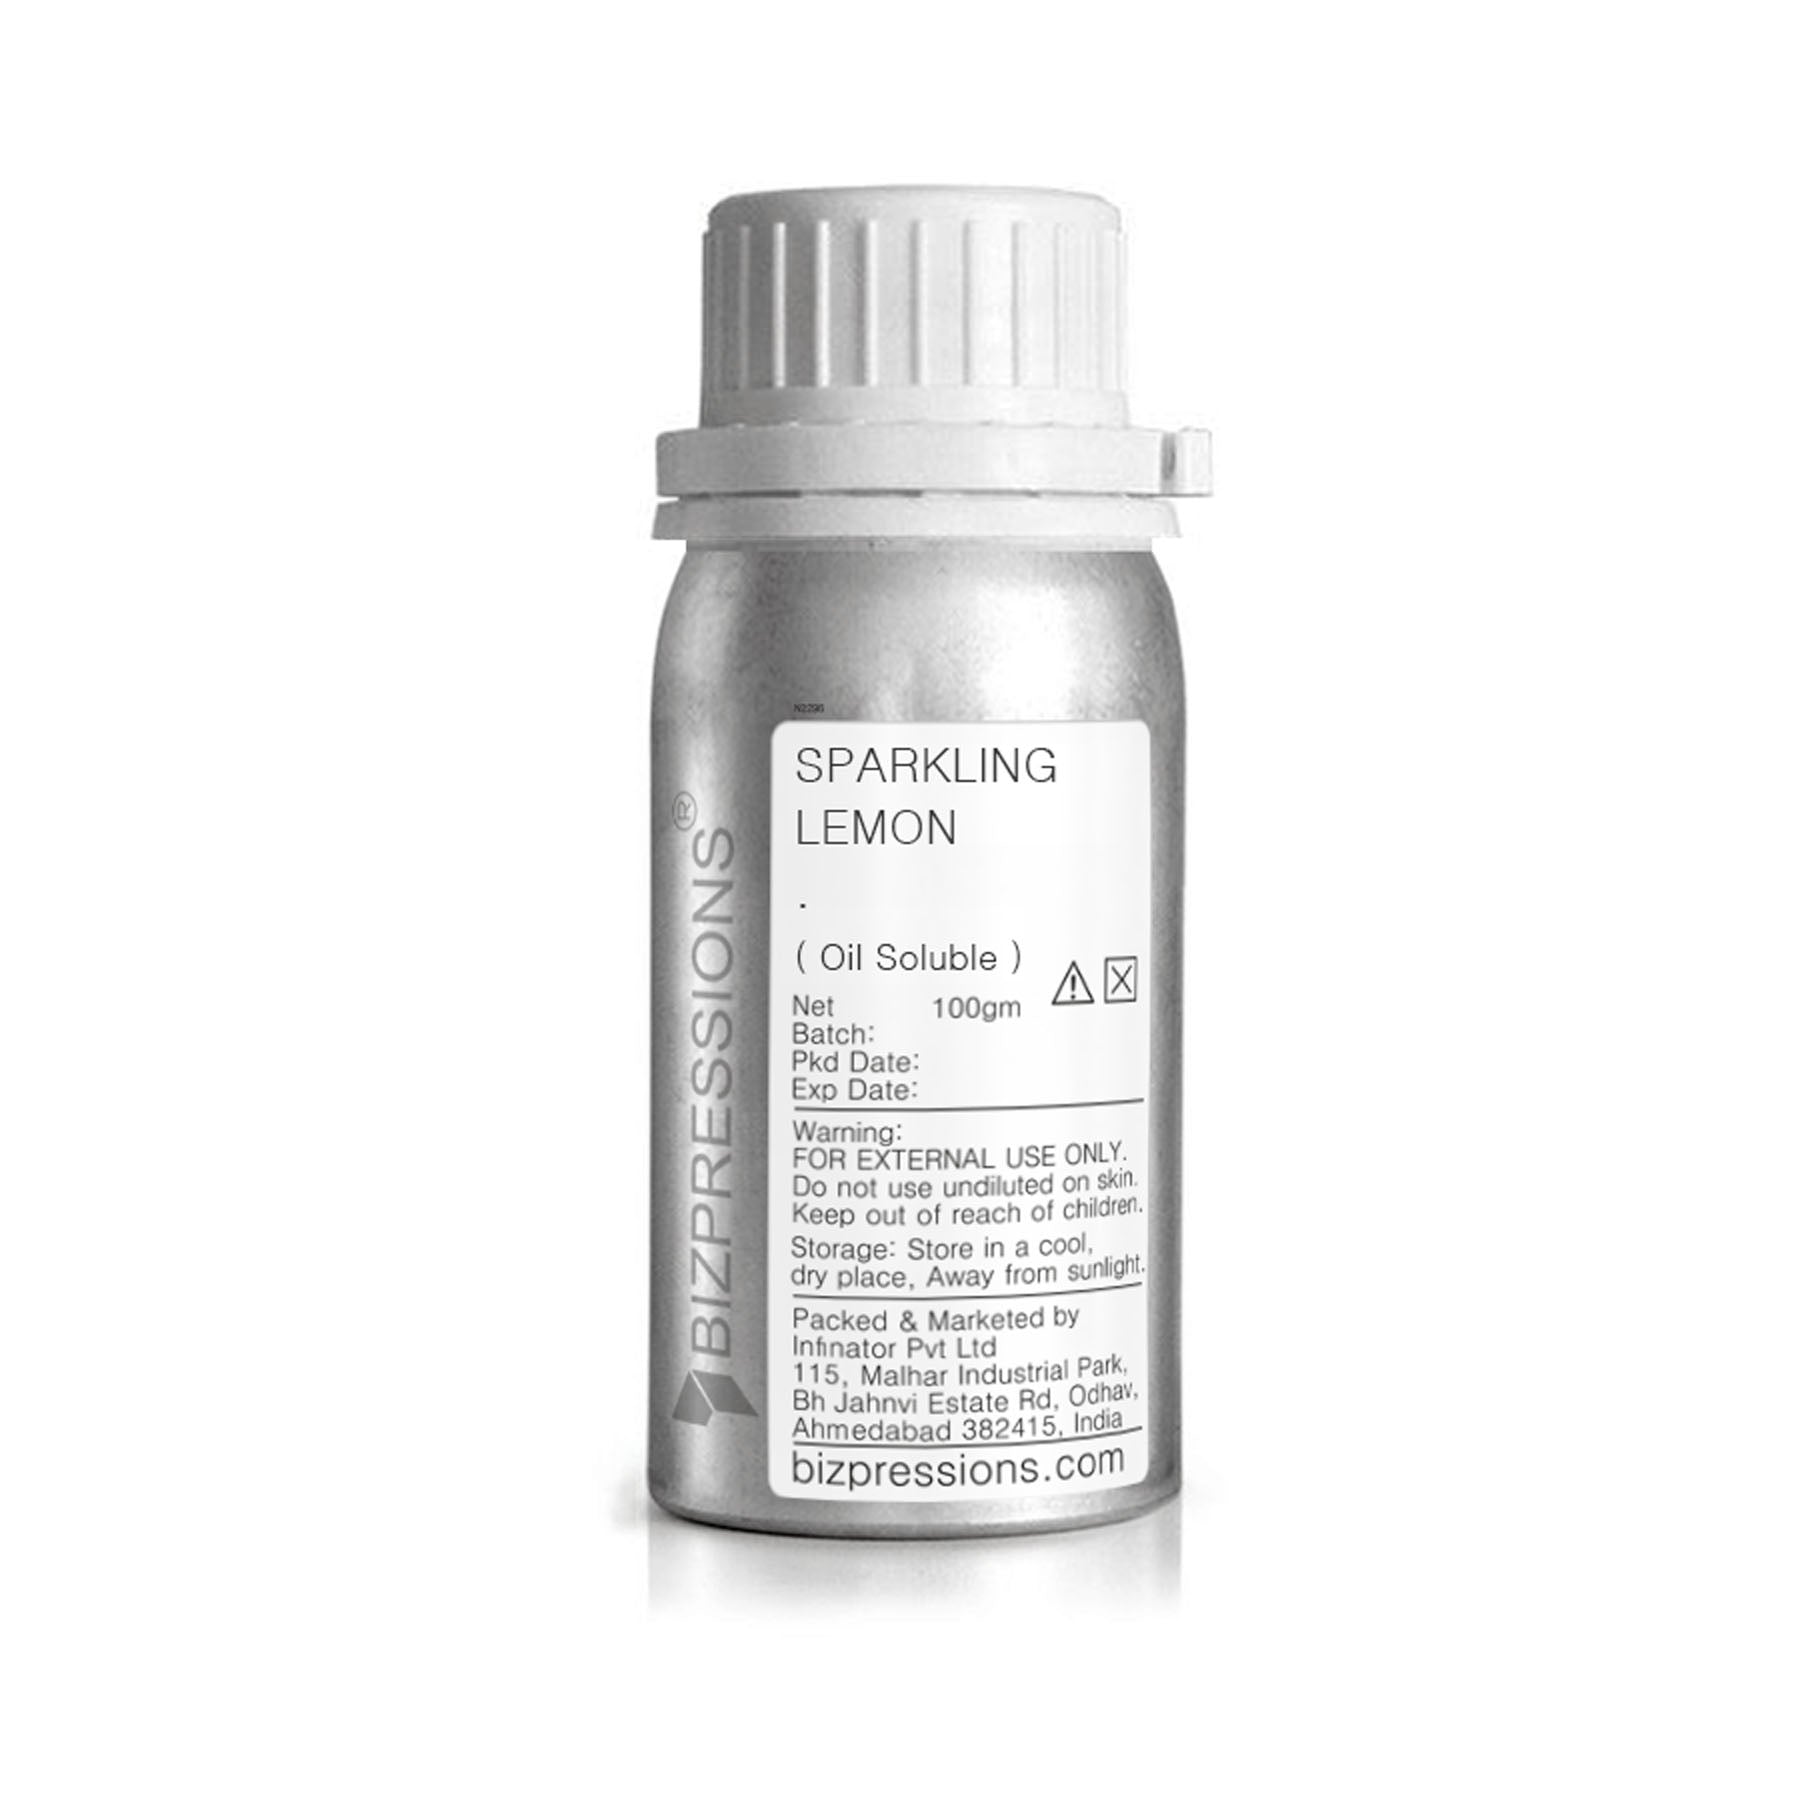 SPARKLING LEMON - Fragrance ( Oil Soluble ) - 100 gm